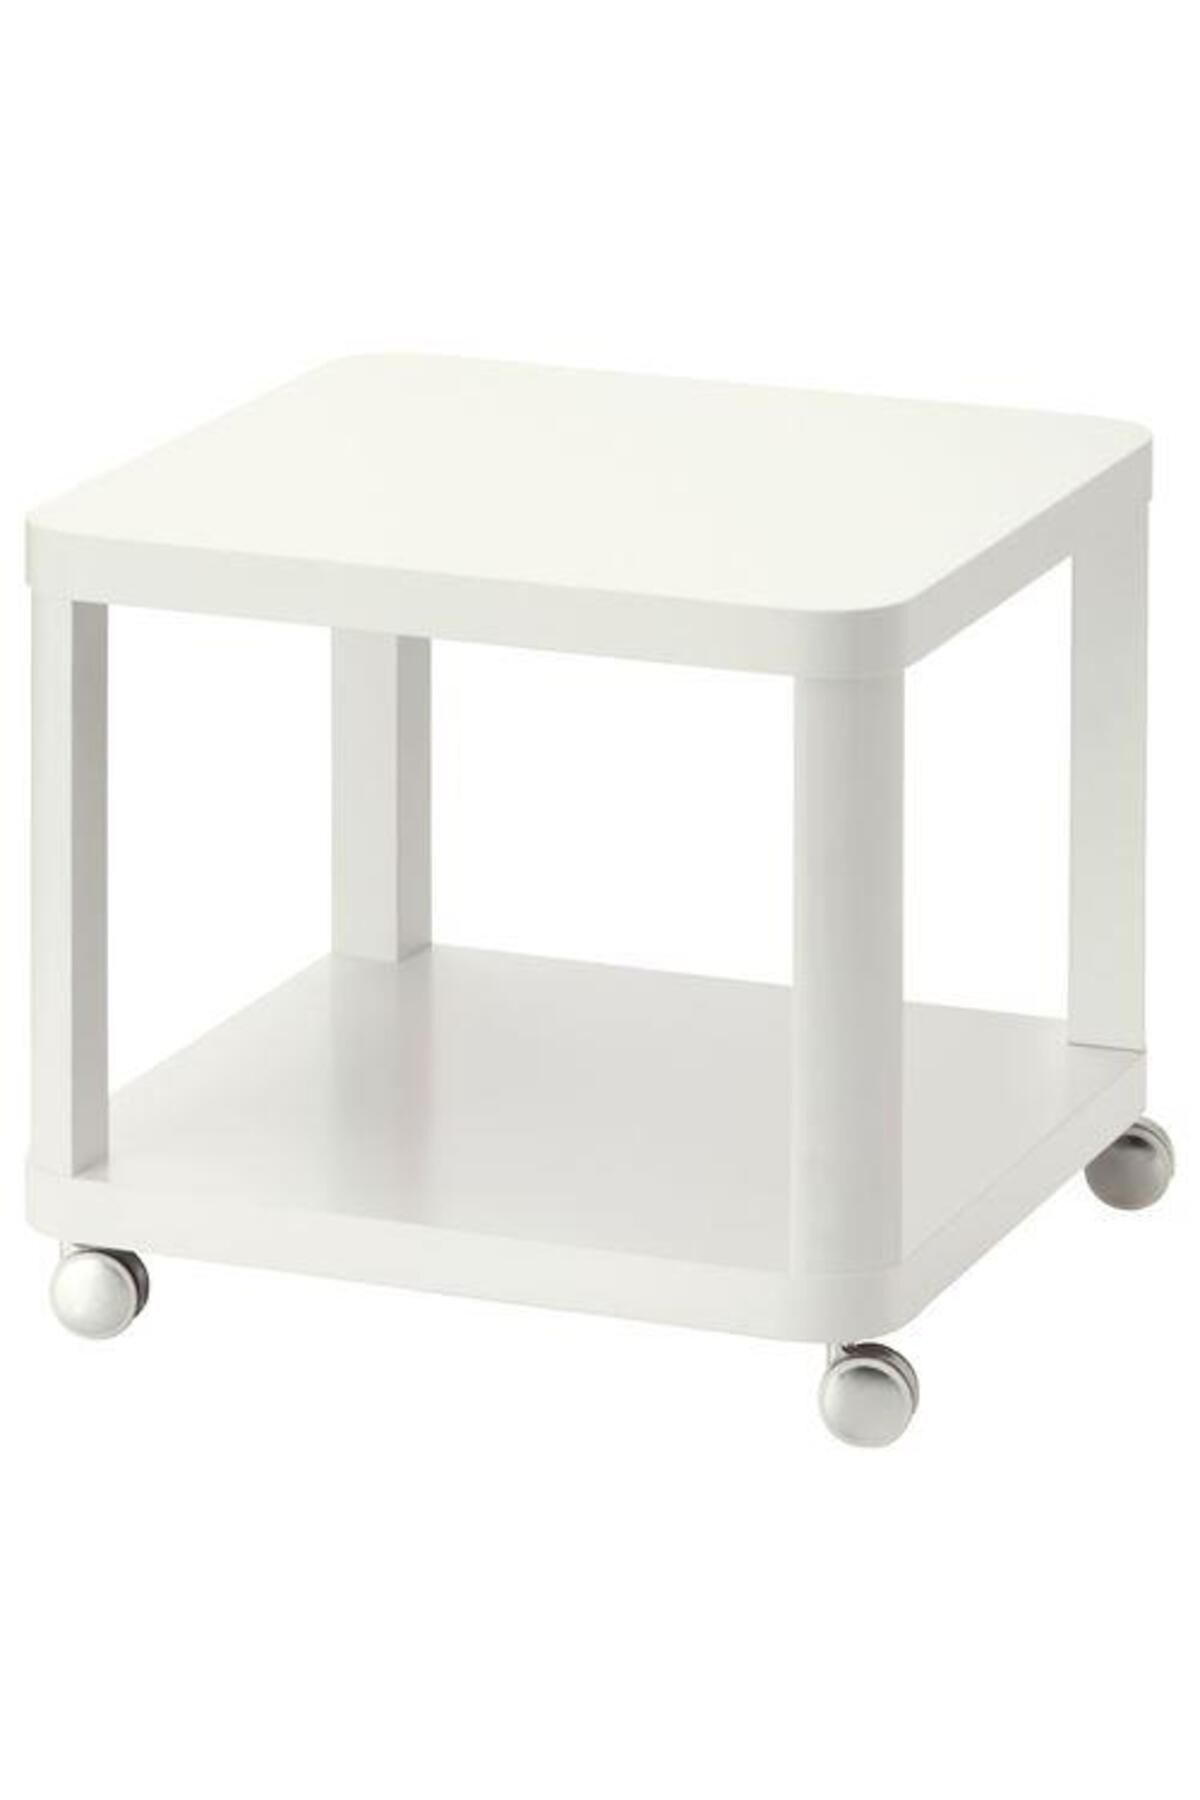 IKEA Tekerlekli Yan Sehpa, Beyaz Renk Meridyendukkan 50x50 Cm Ev Dekorasyonu Mobilya